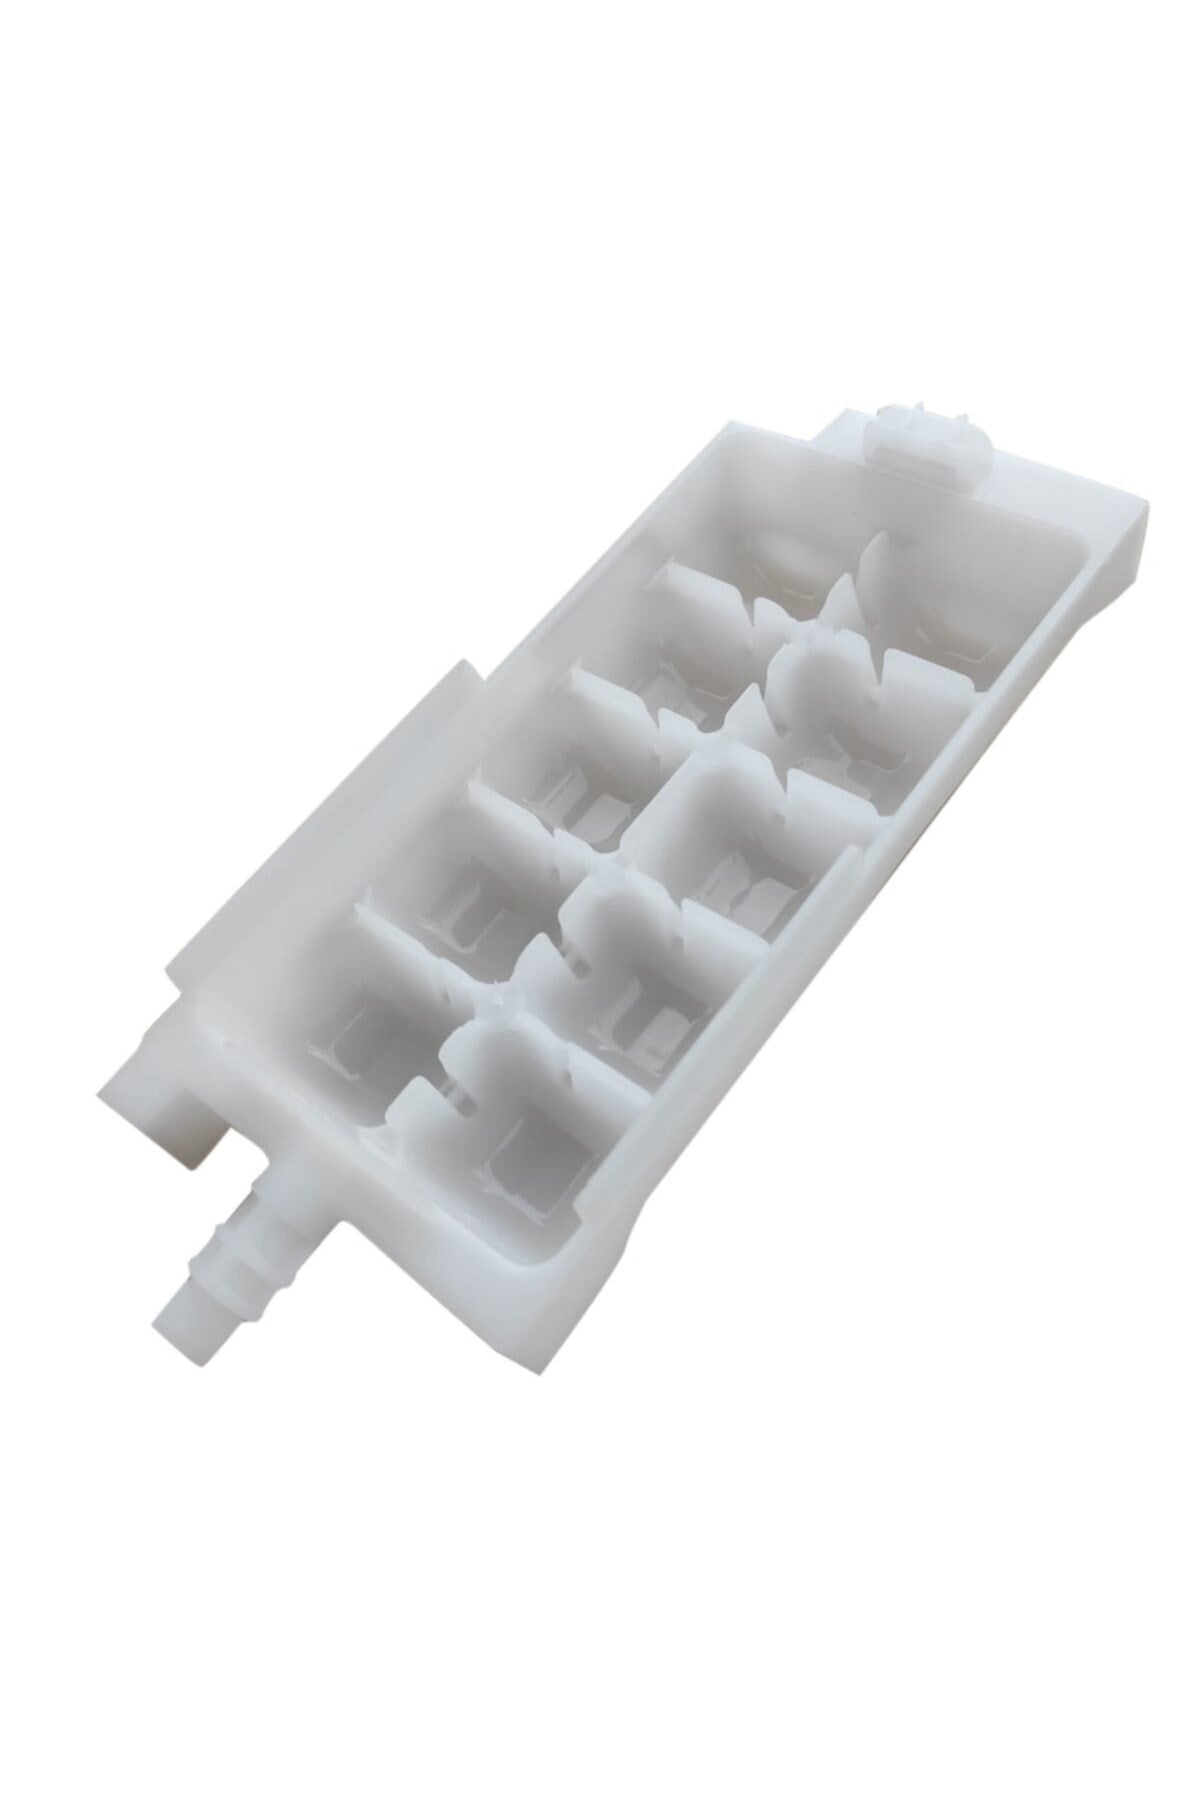 Fridge Freezer Ice Maker Cube Tray For Beko, Arcelik, Blomberg